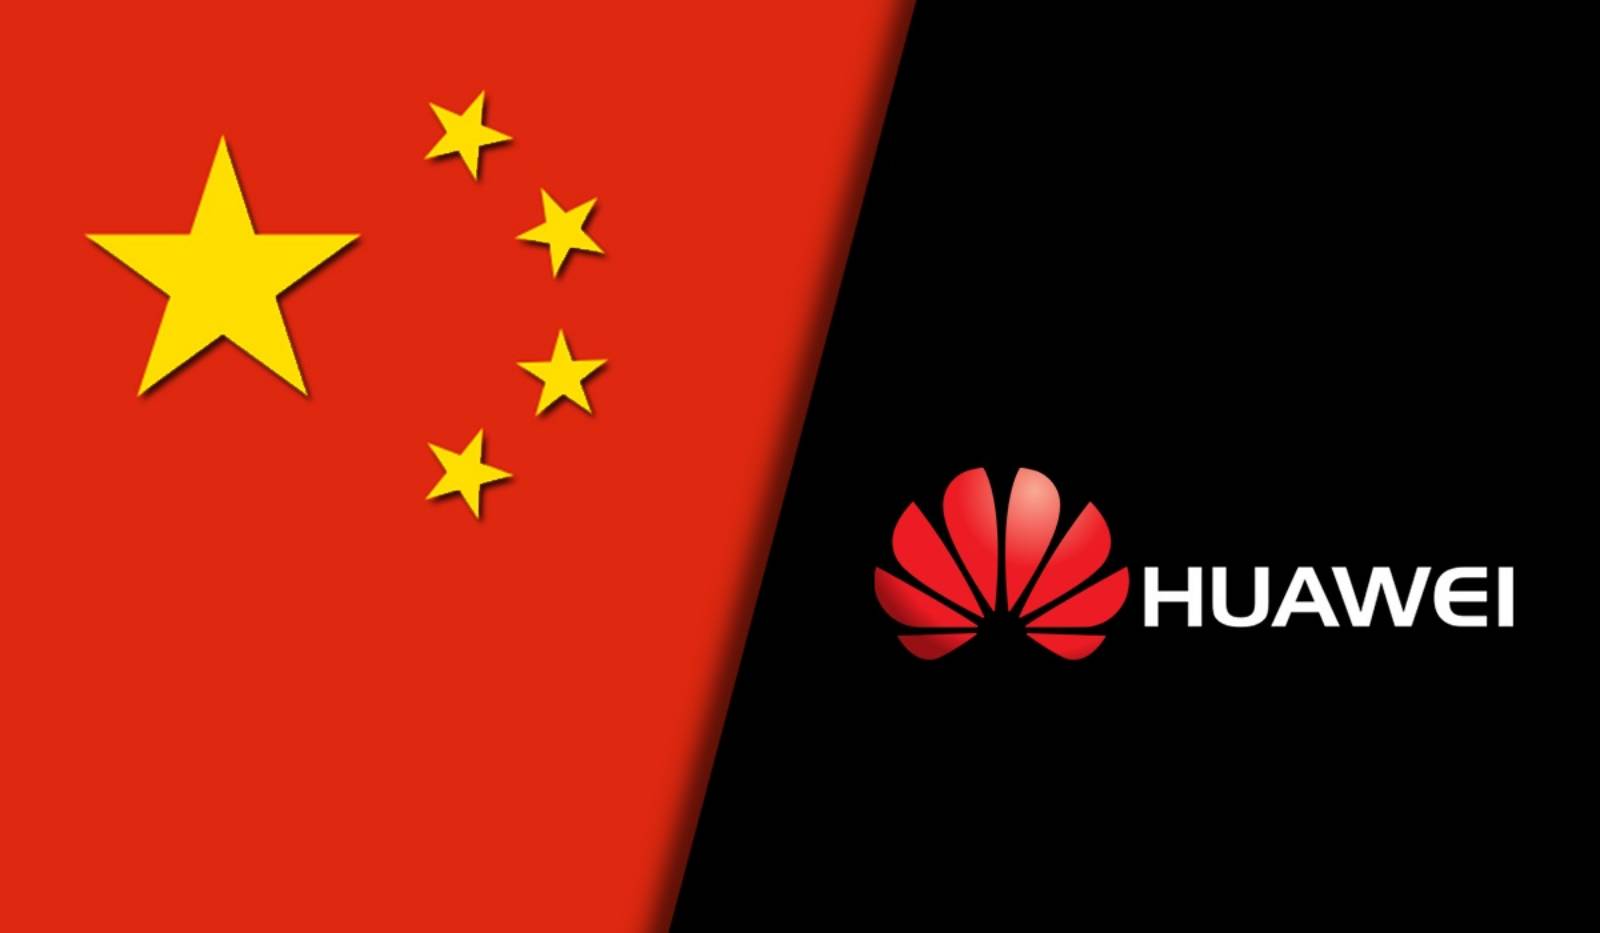 Huawei: grandi sanzioni colpiscono gli operatori di telecomunicazioni europei